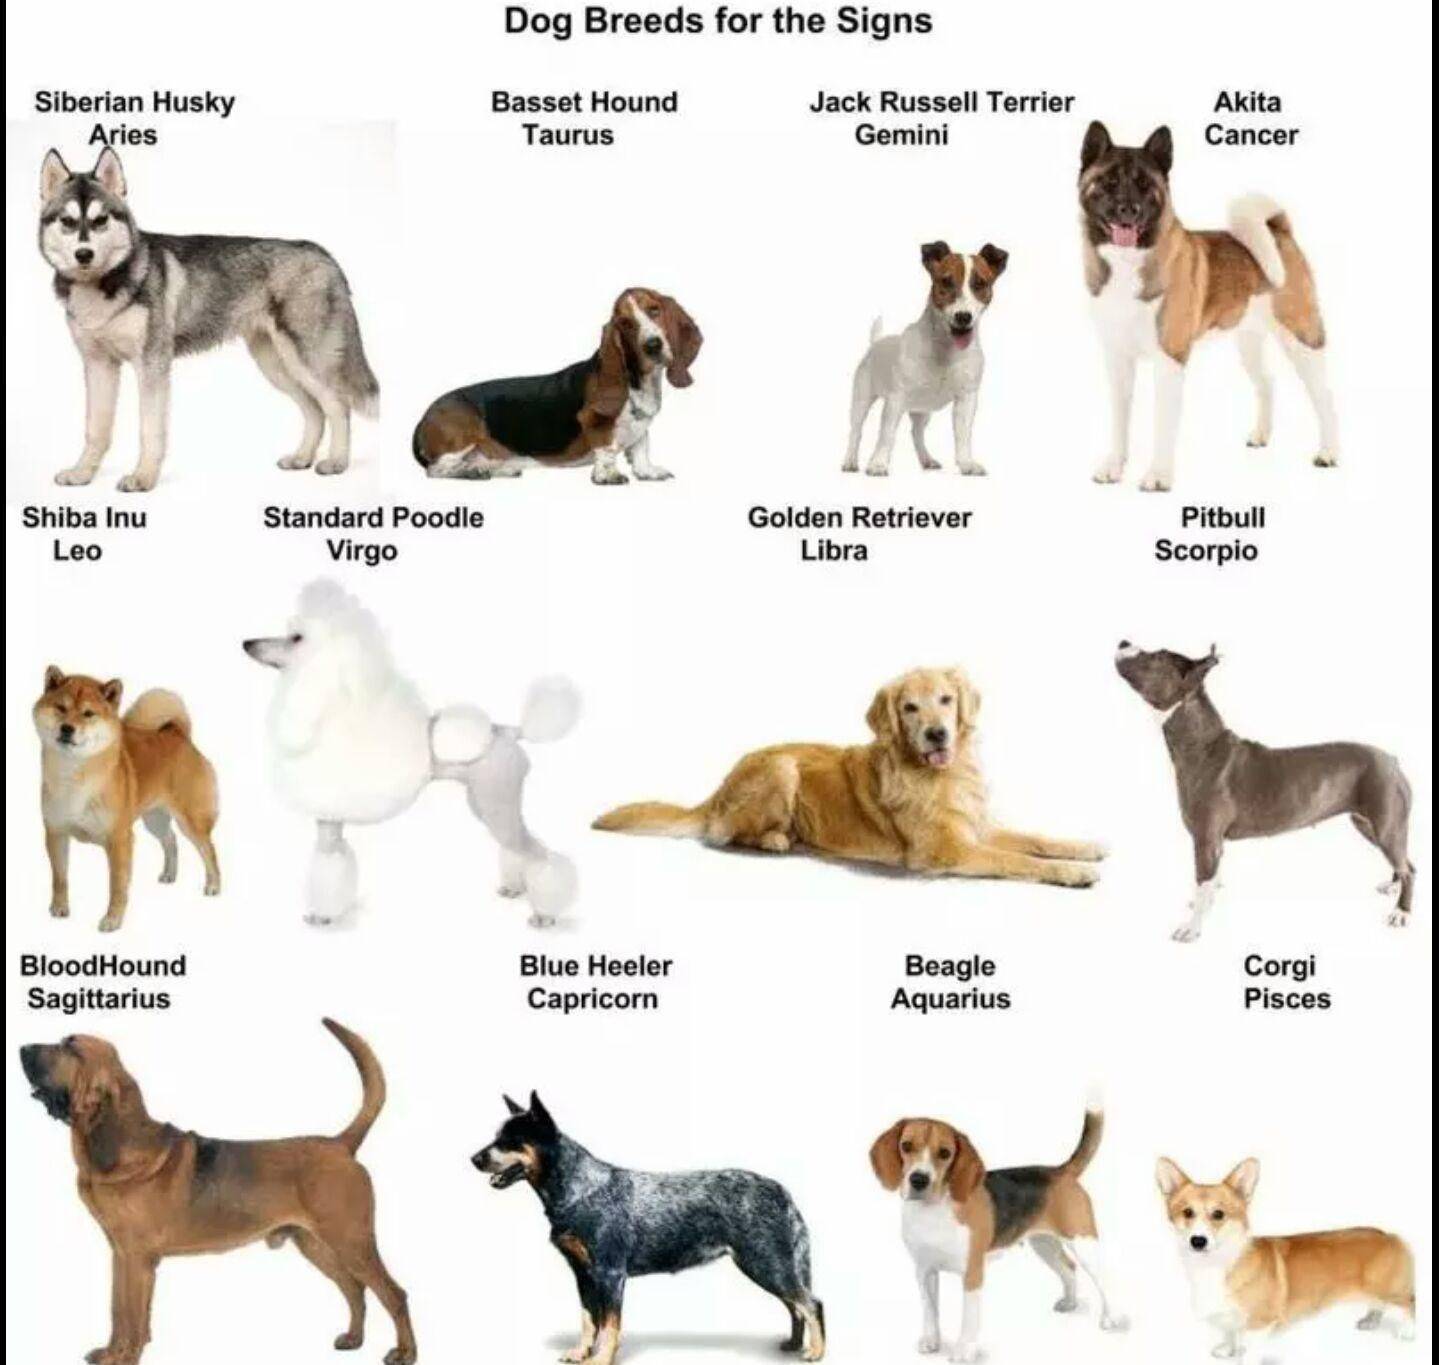 Порода собак по знаку зодиака - выбираем правильного питомца